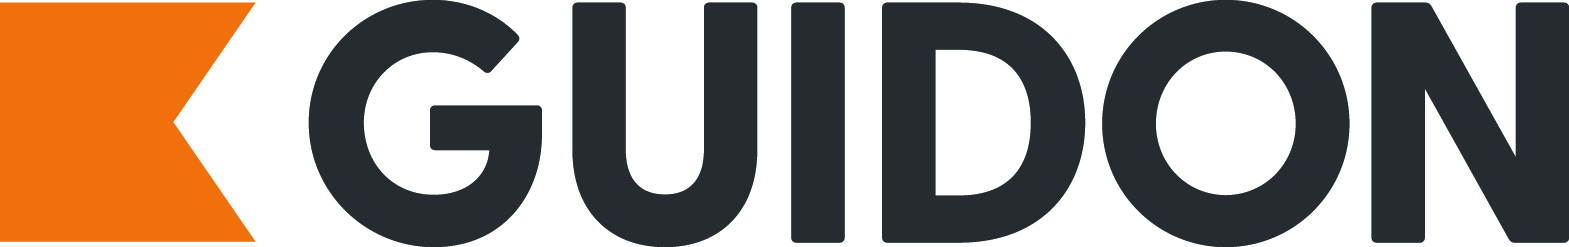 Guidon Sponsor logo